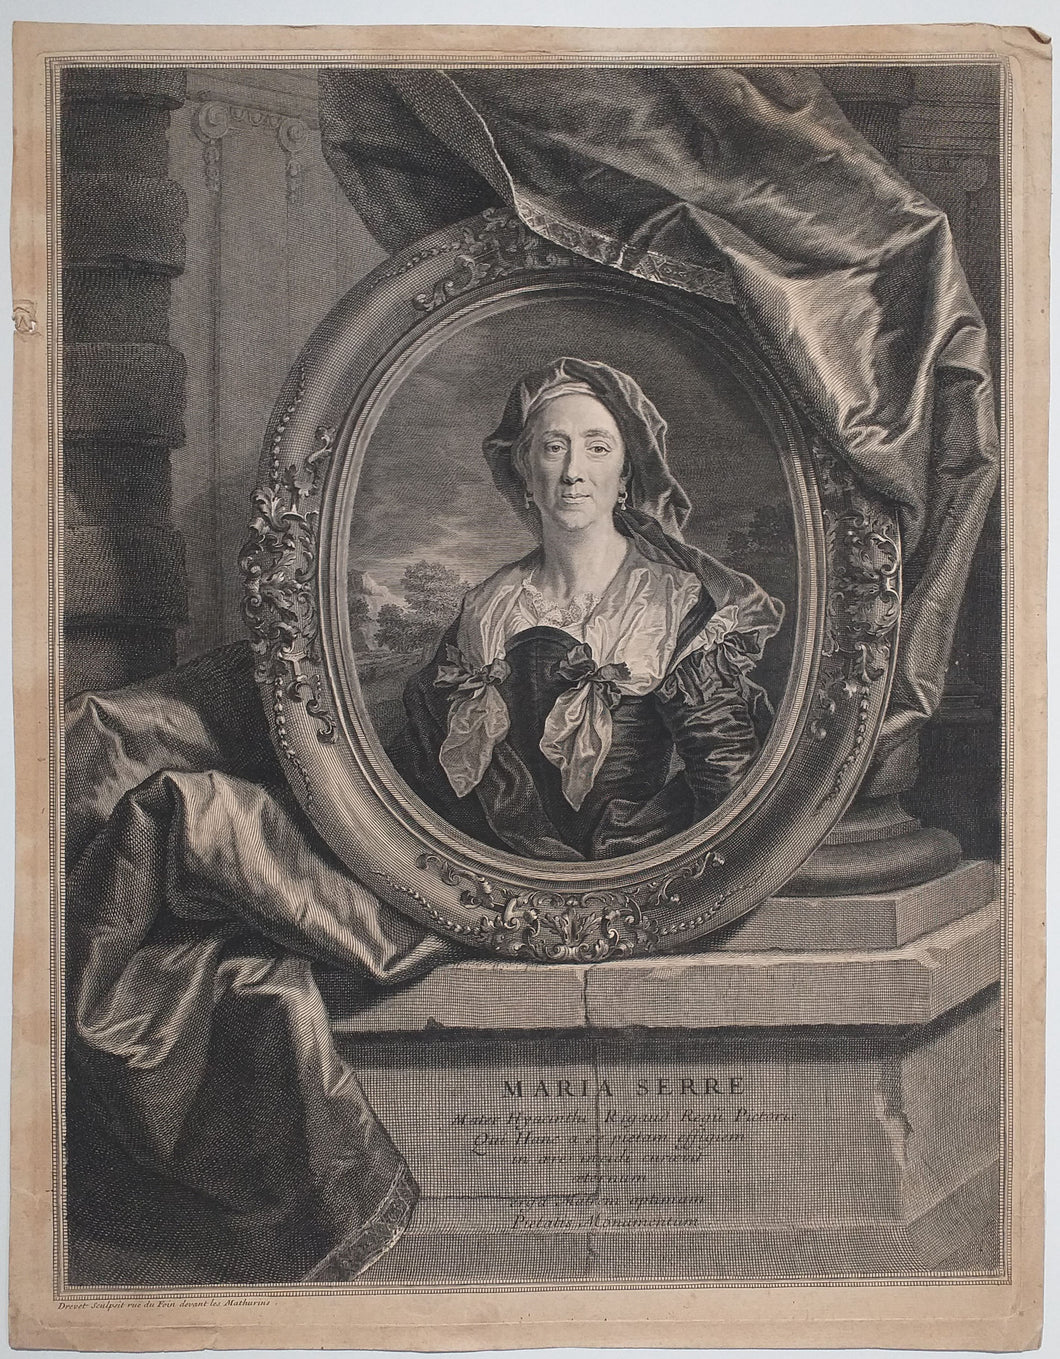 Portrait de Maria Serre, mère de Hyacinthe Rigaud, à l'âge de 57 ans.  1702-1706.